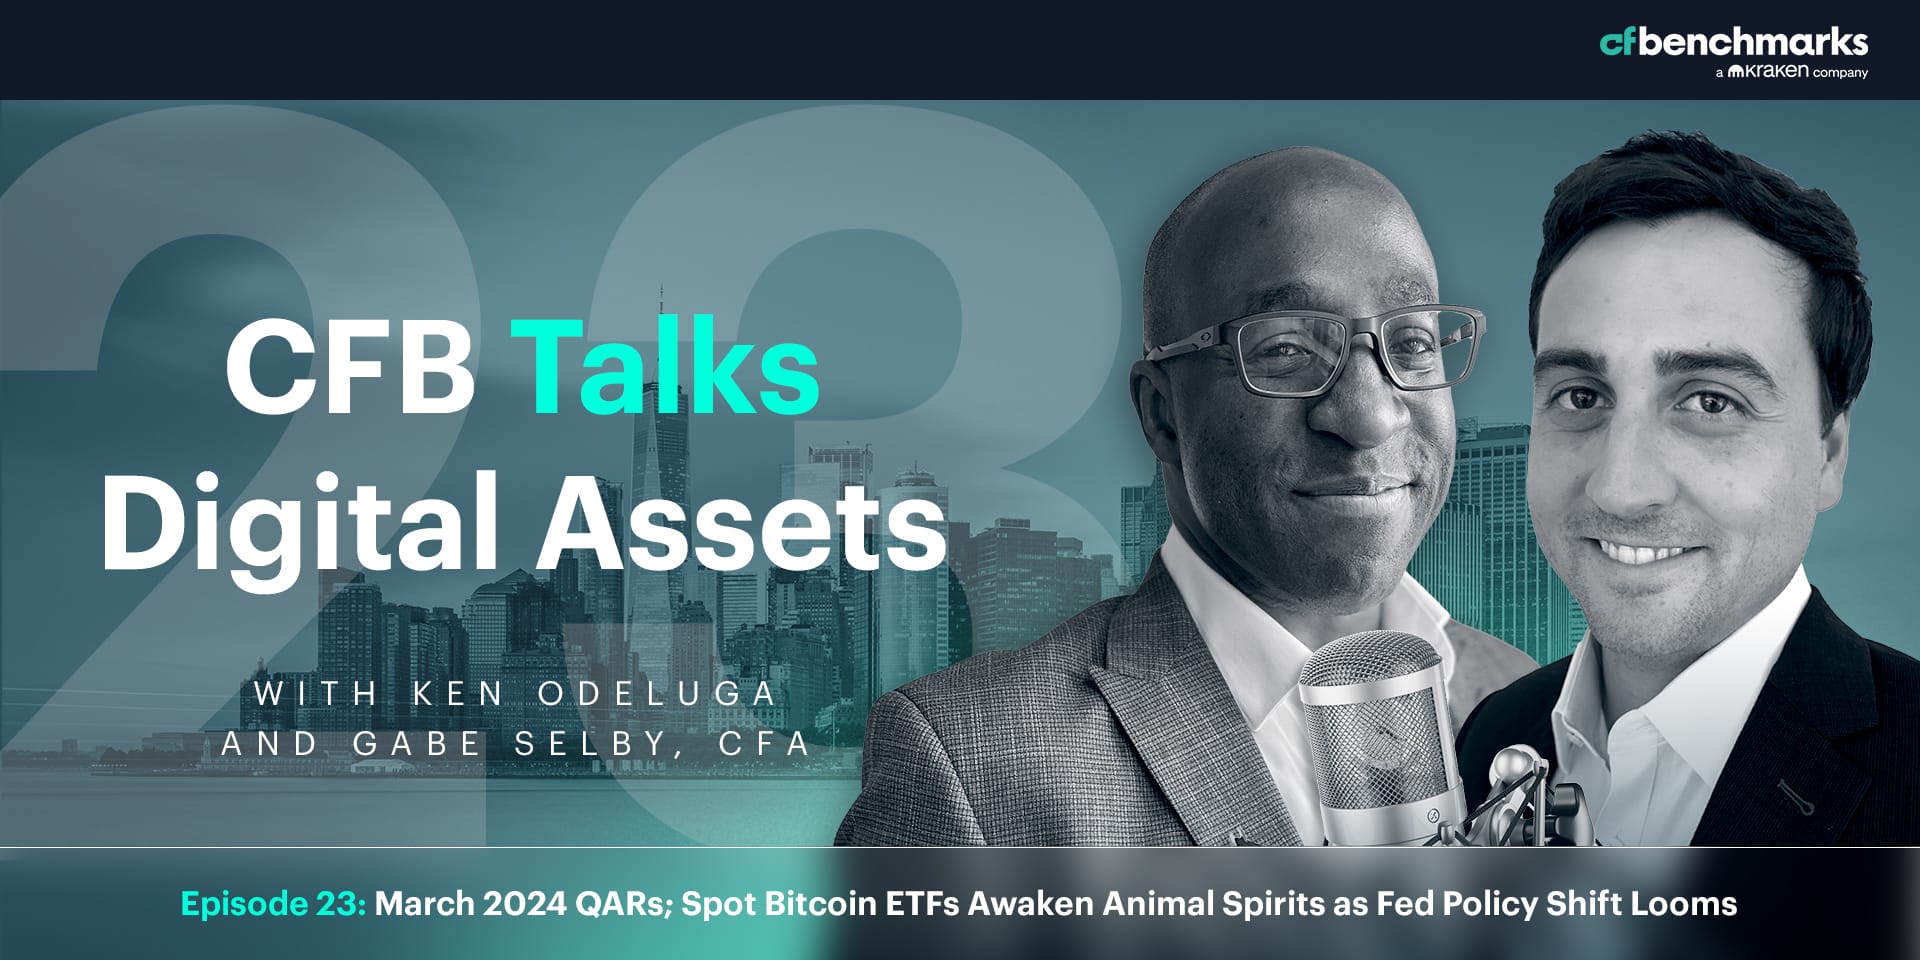 CFB Talks Digital Assets Episode 23: March 2024 QARs - Spot Bitcoin ETFs Awaken Animal Spirits